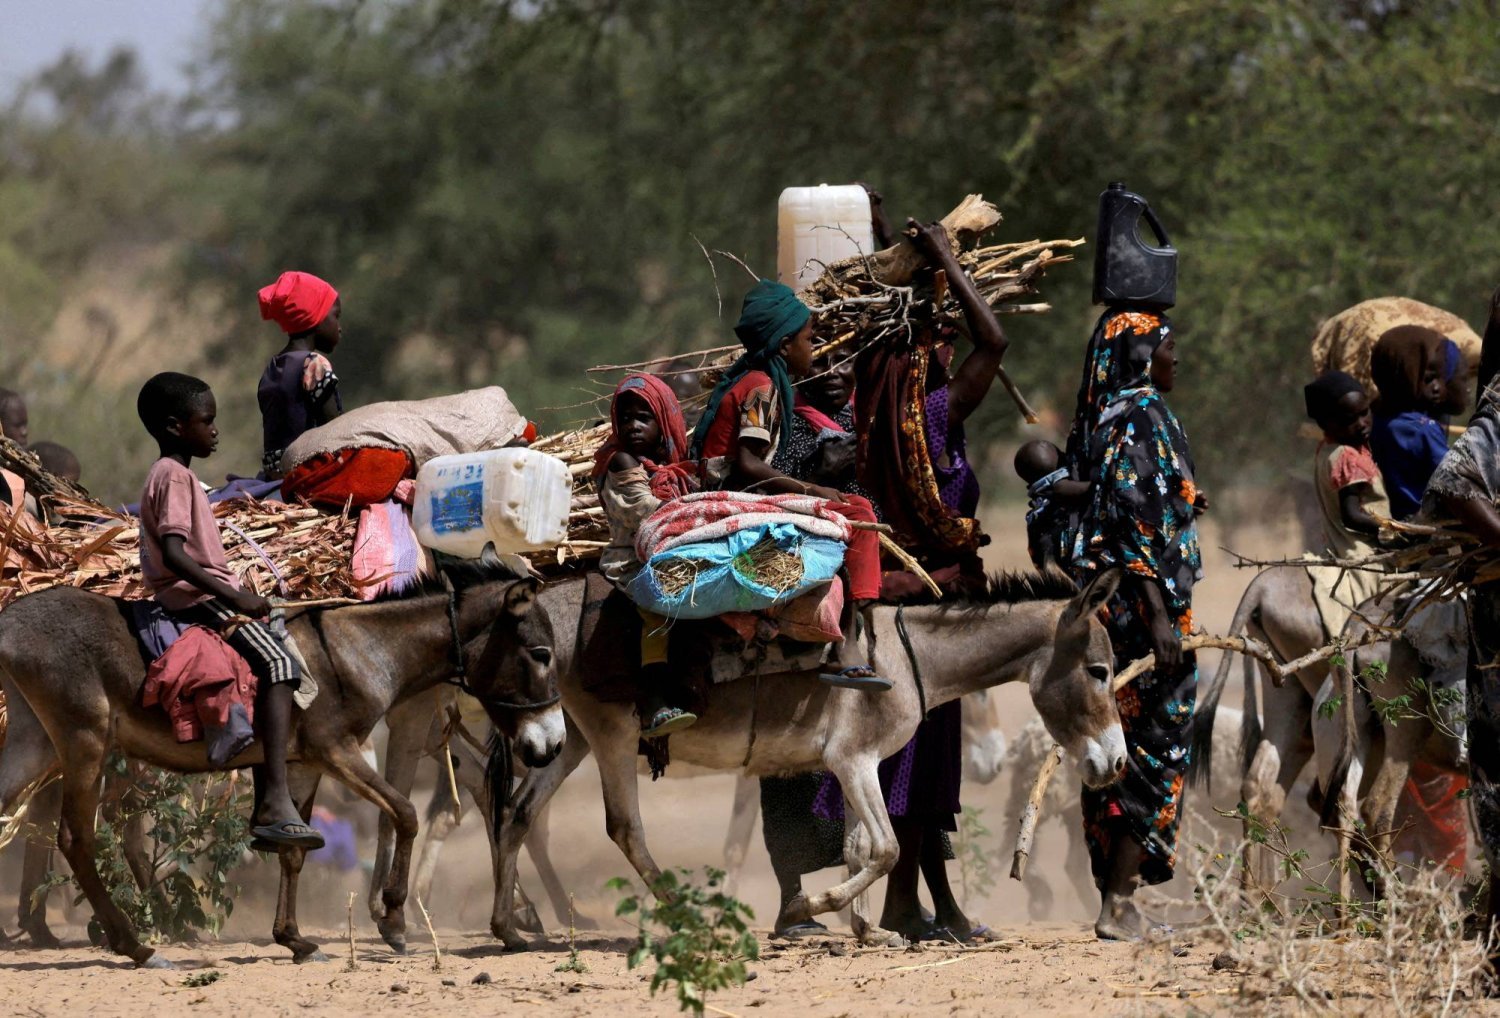 Sudan'ın Darfur eyaletindeki şiddet olaylarından kaçan Sudanlı mülteciler, Sudan-Çad sınırı yakınlarına göç ediyor. (Reuters)